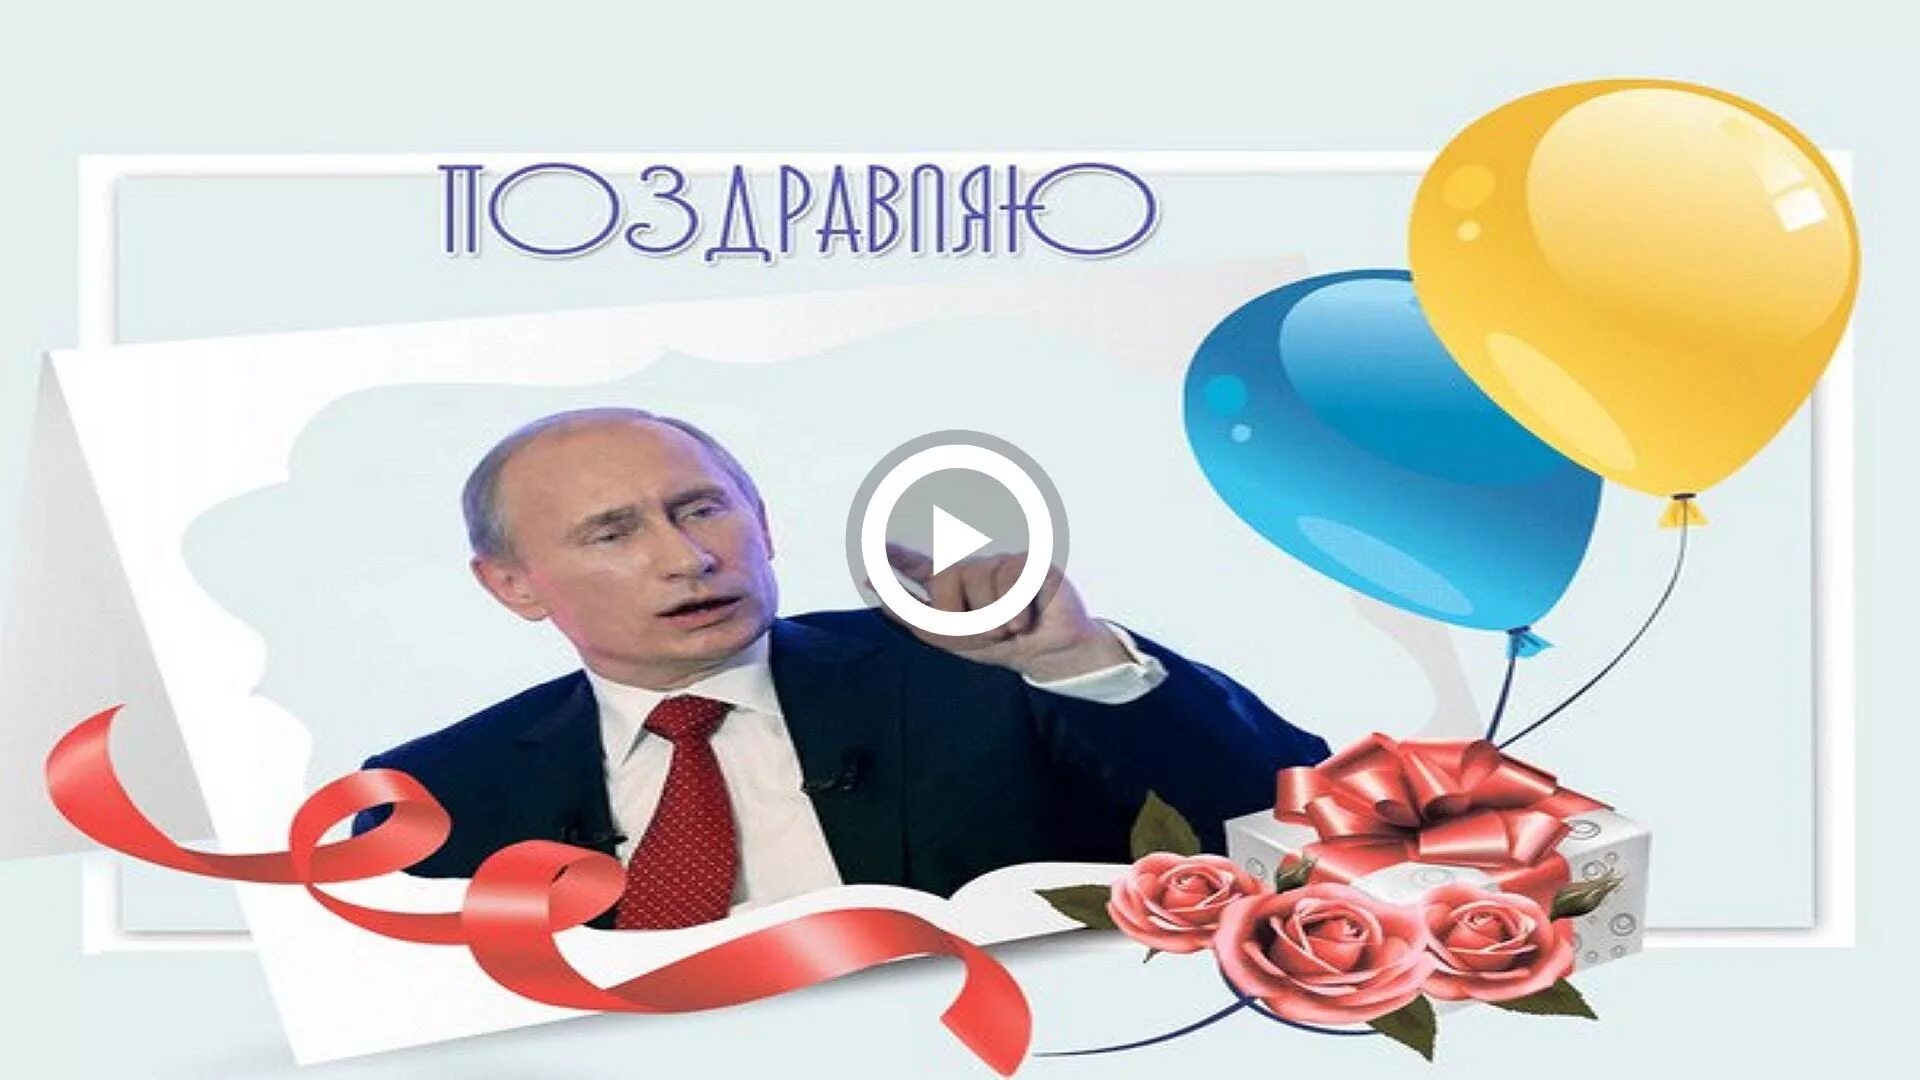 С днём рождения от Путина. Поздравление Путина с днем рождения. День рождения Путина открытки. Голосовое поздравляю с днем рождения